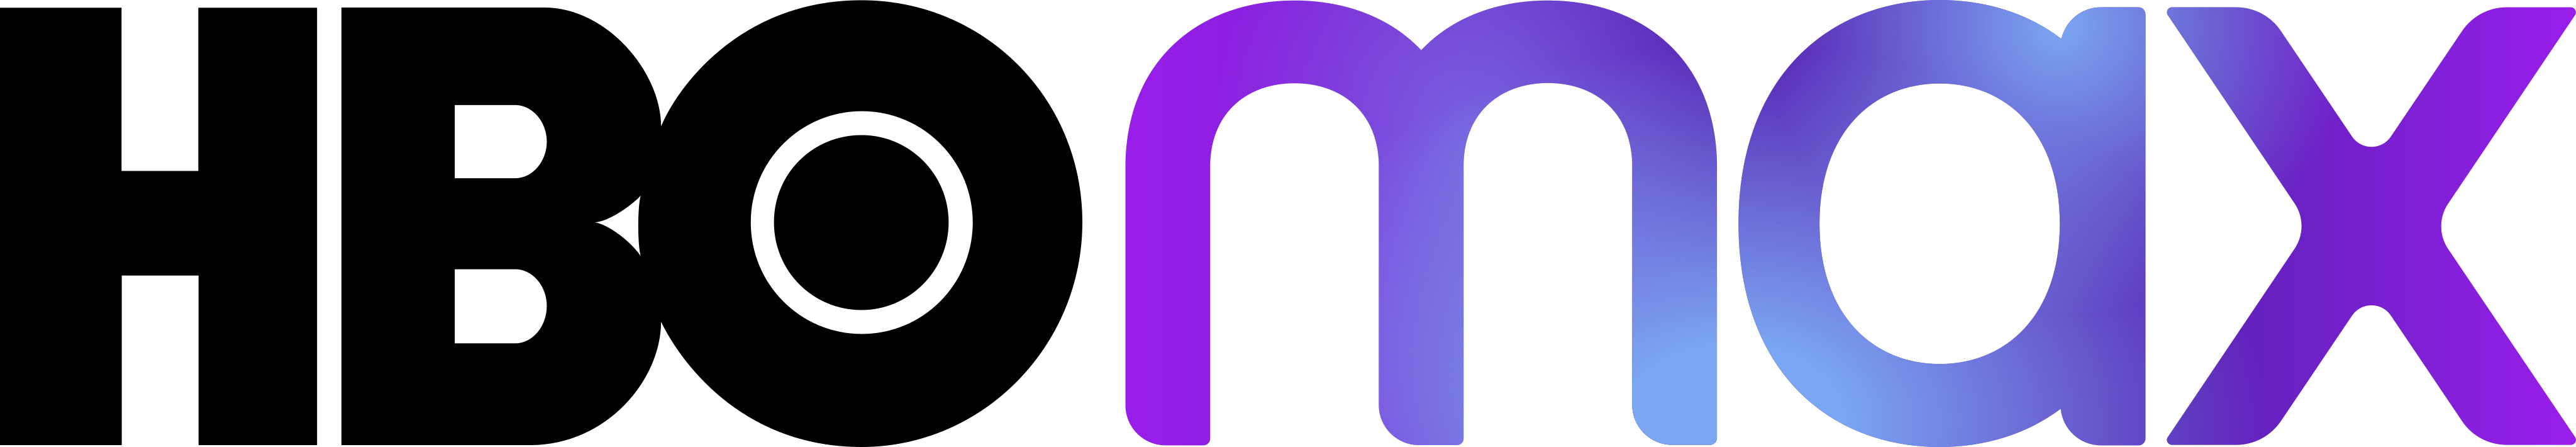 hbo max logo - HBO Max Logo